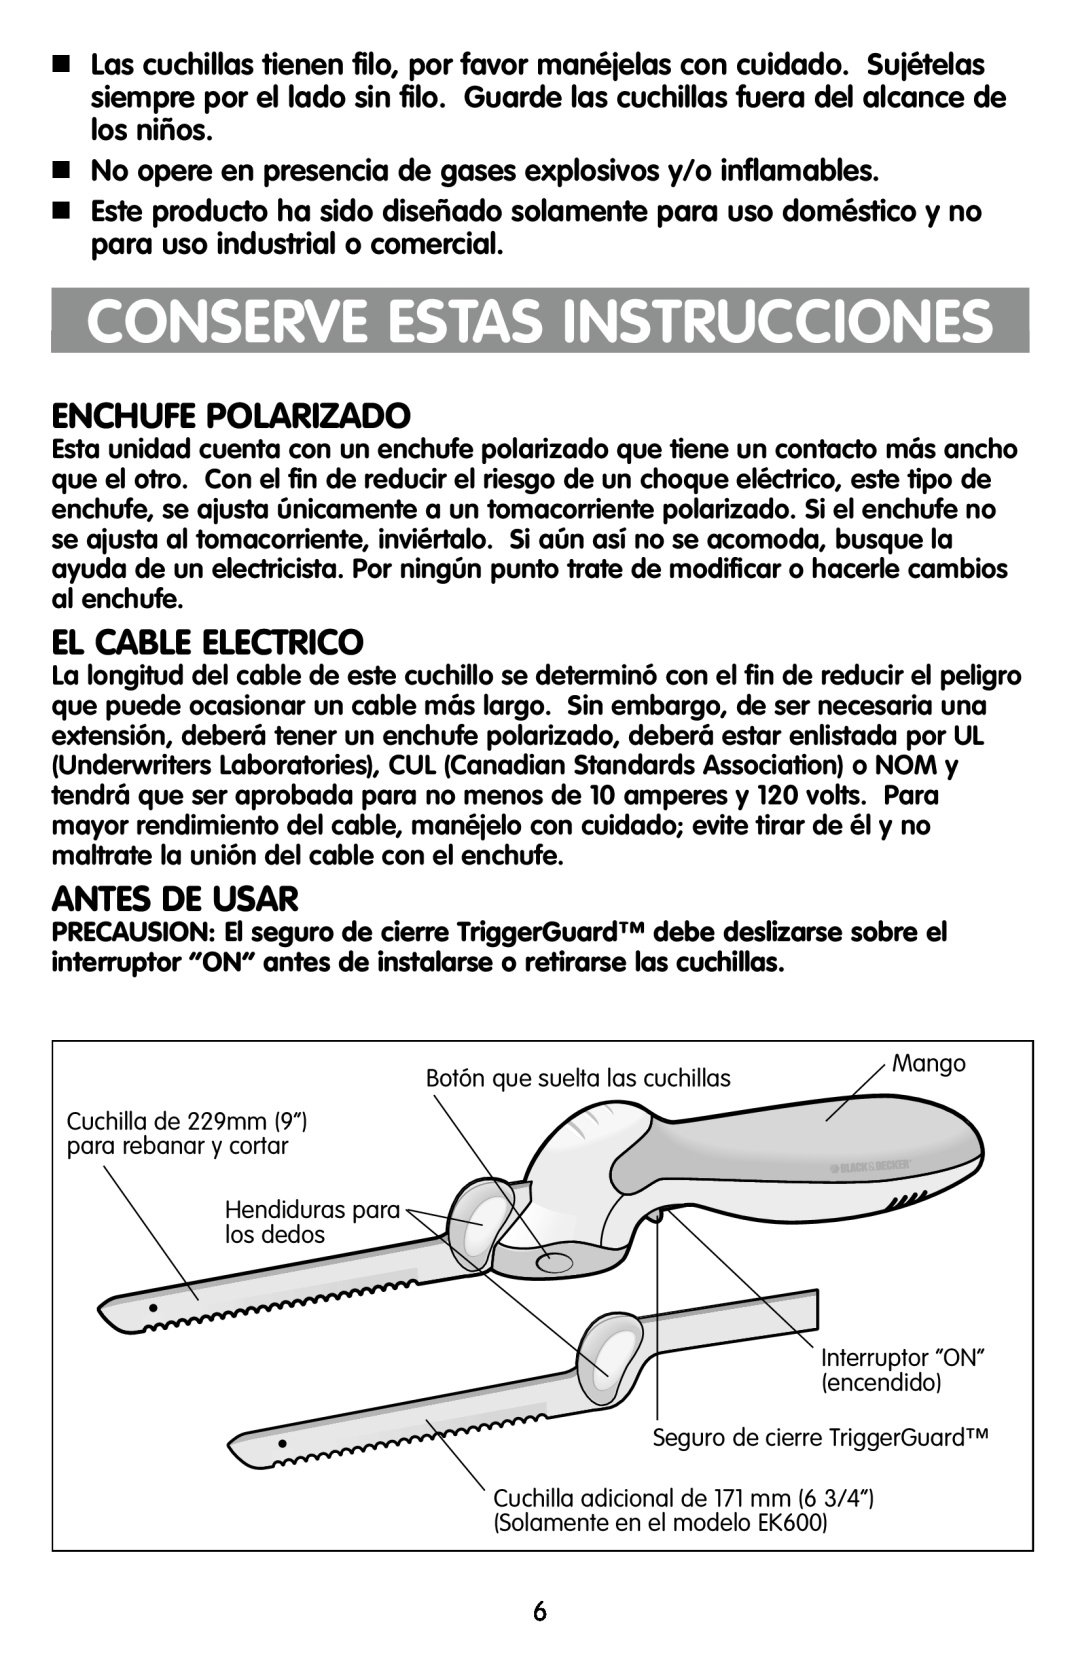 Black & Decker EK500, EK600 manual Conserve Estas Instrucciones, Enchufe Polarizado, El Cable Electrico, Antes De Usar 